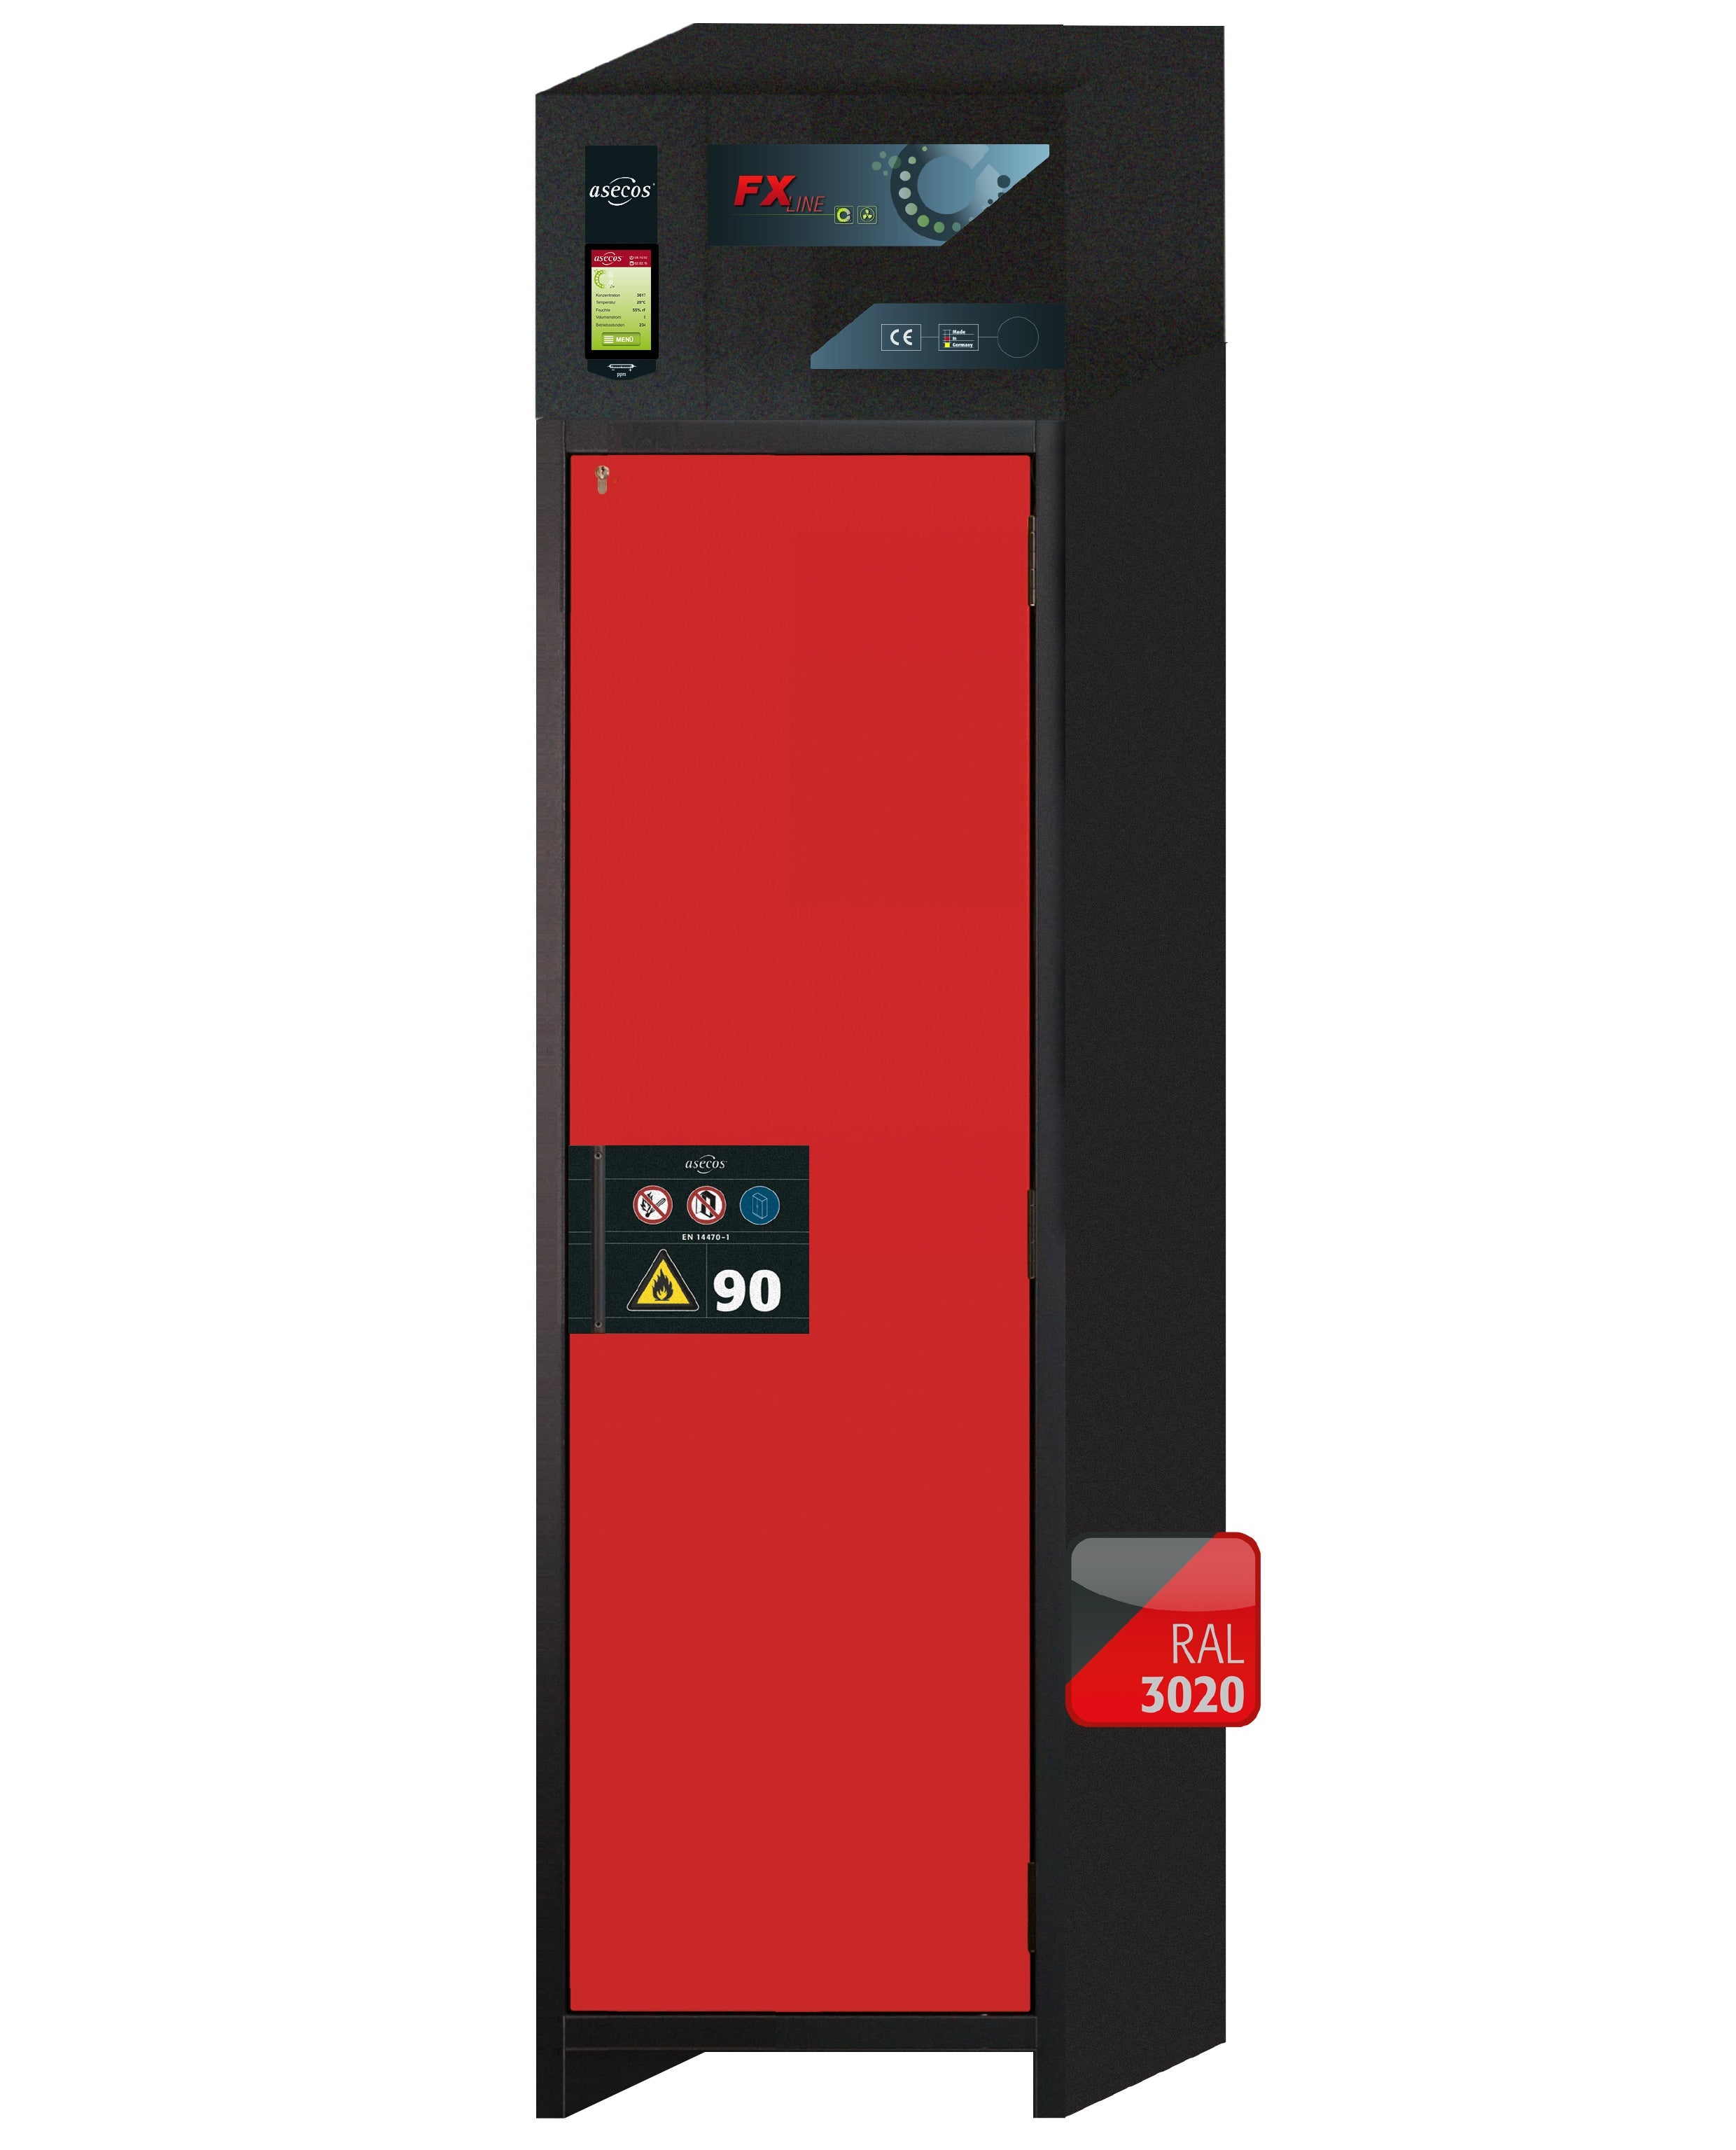 Armoire de filtration d'air recyclé type 90 FX-PEGASUS-90 modèle FX90.229.060.WDACR en rouge signalisation RAL 3020 avec 4 plateaux coulissants standard (tôle d'acier)